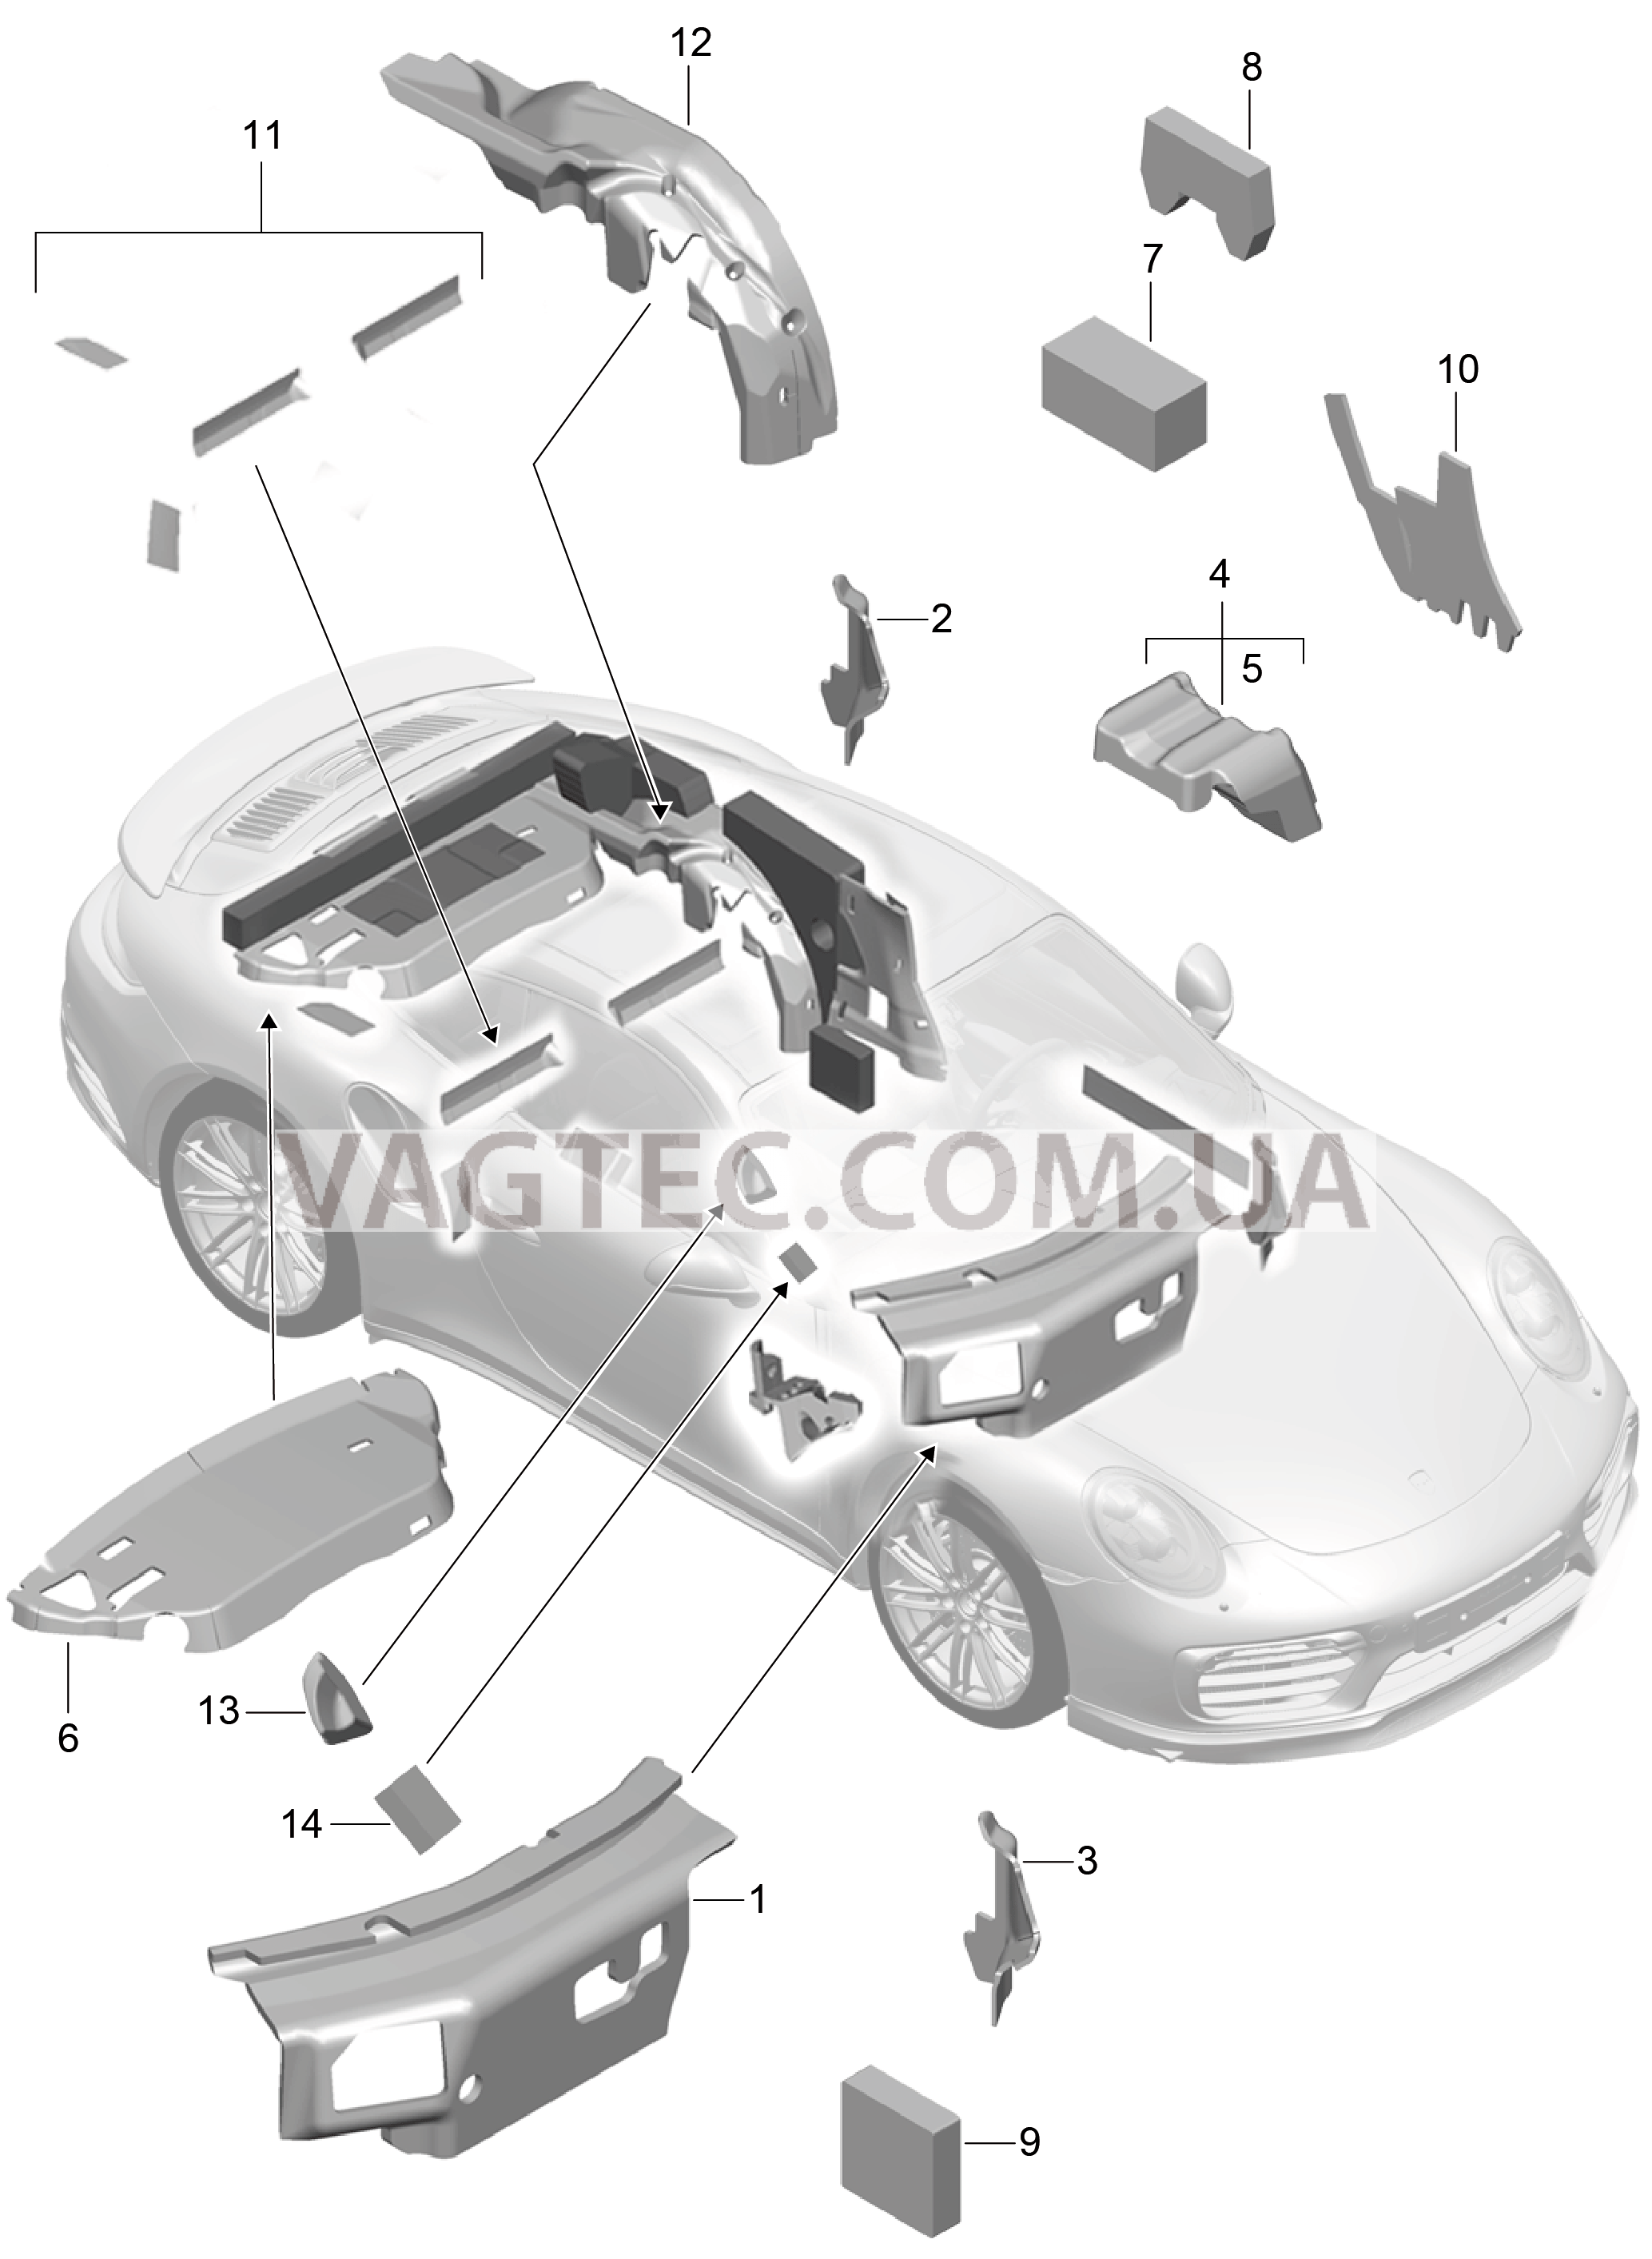 807-083 Кузов, Звукоизоляция 1
						
						CABRIO для PORSCHE Porsche991Turbo 2014-2017